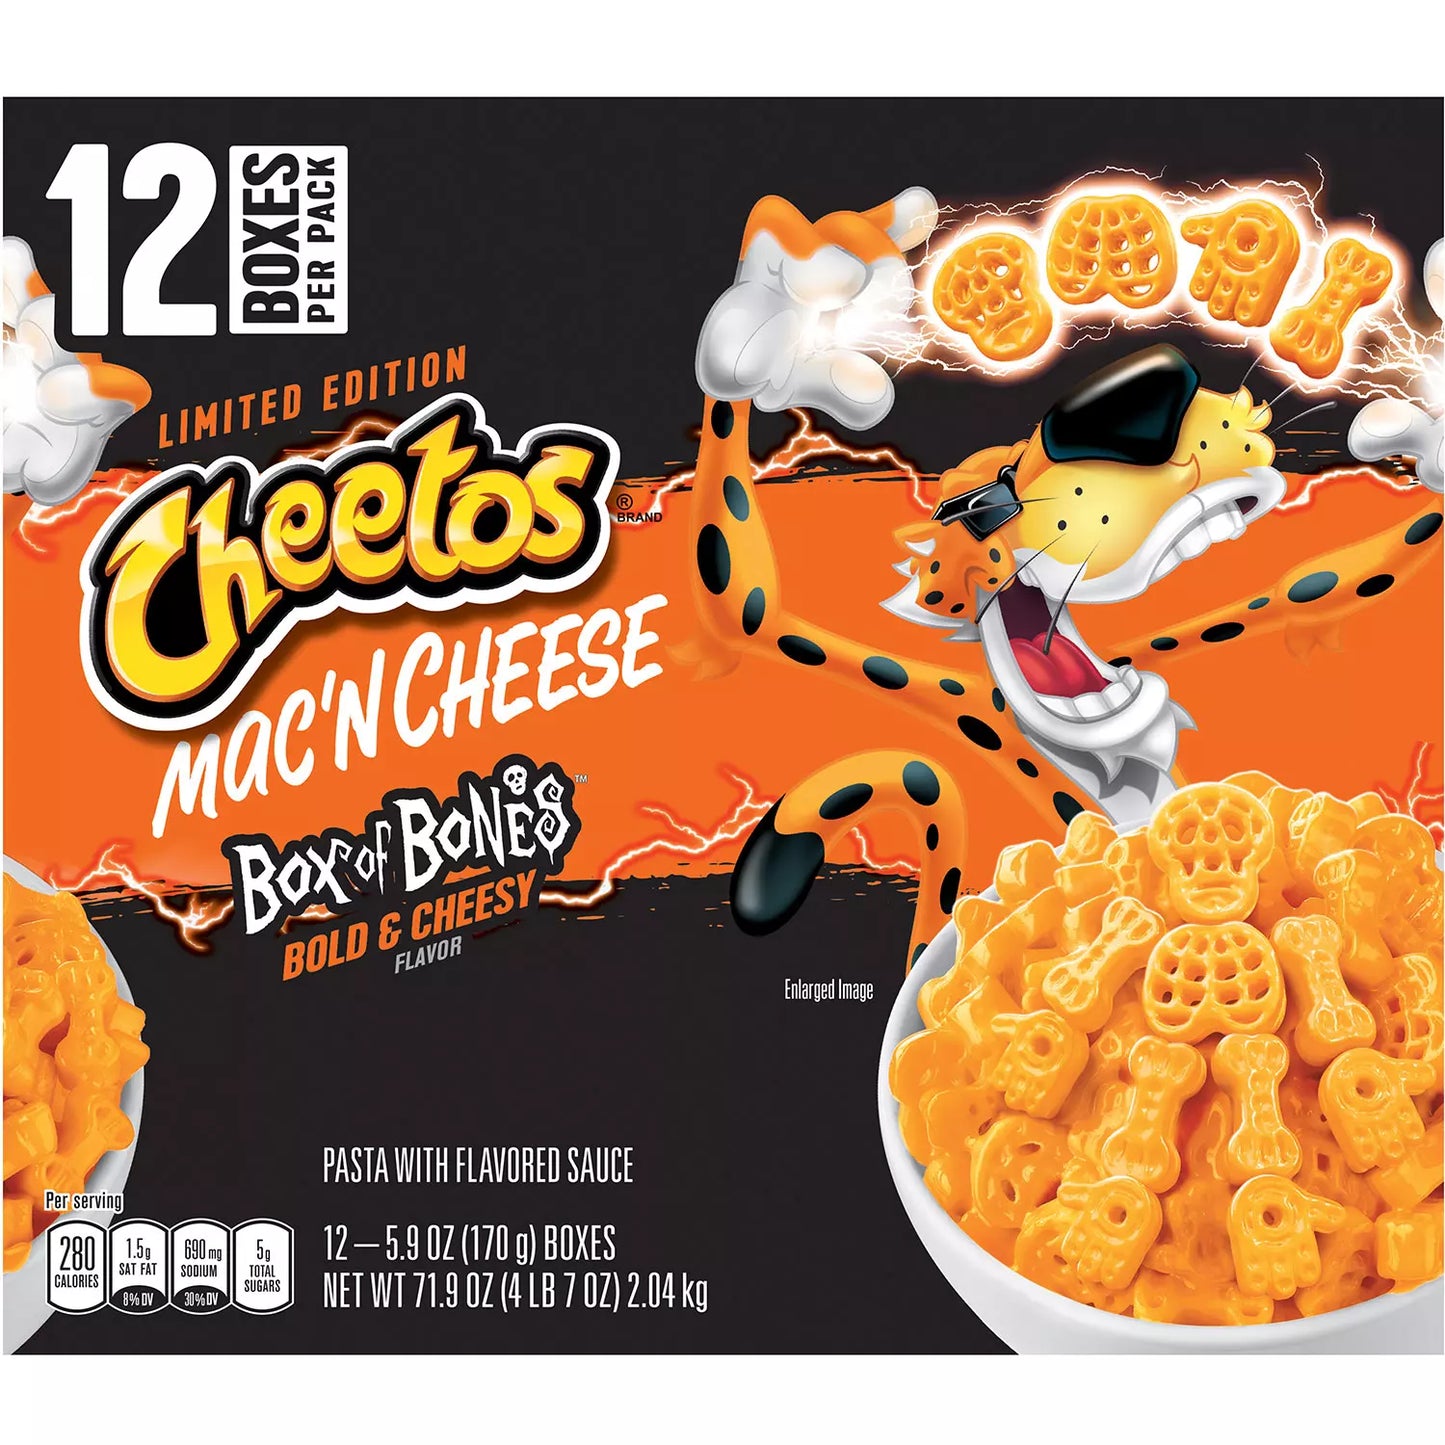 Cheetos Mac and Cheese Box of Bones, Bold & Cheesy (12 pk.) RARE